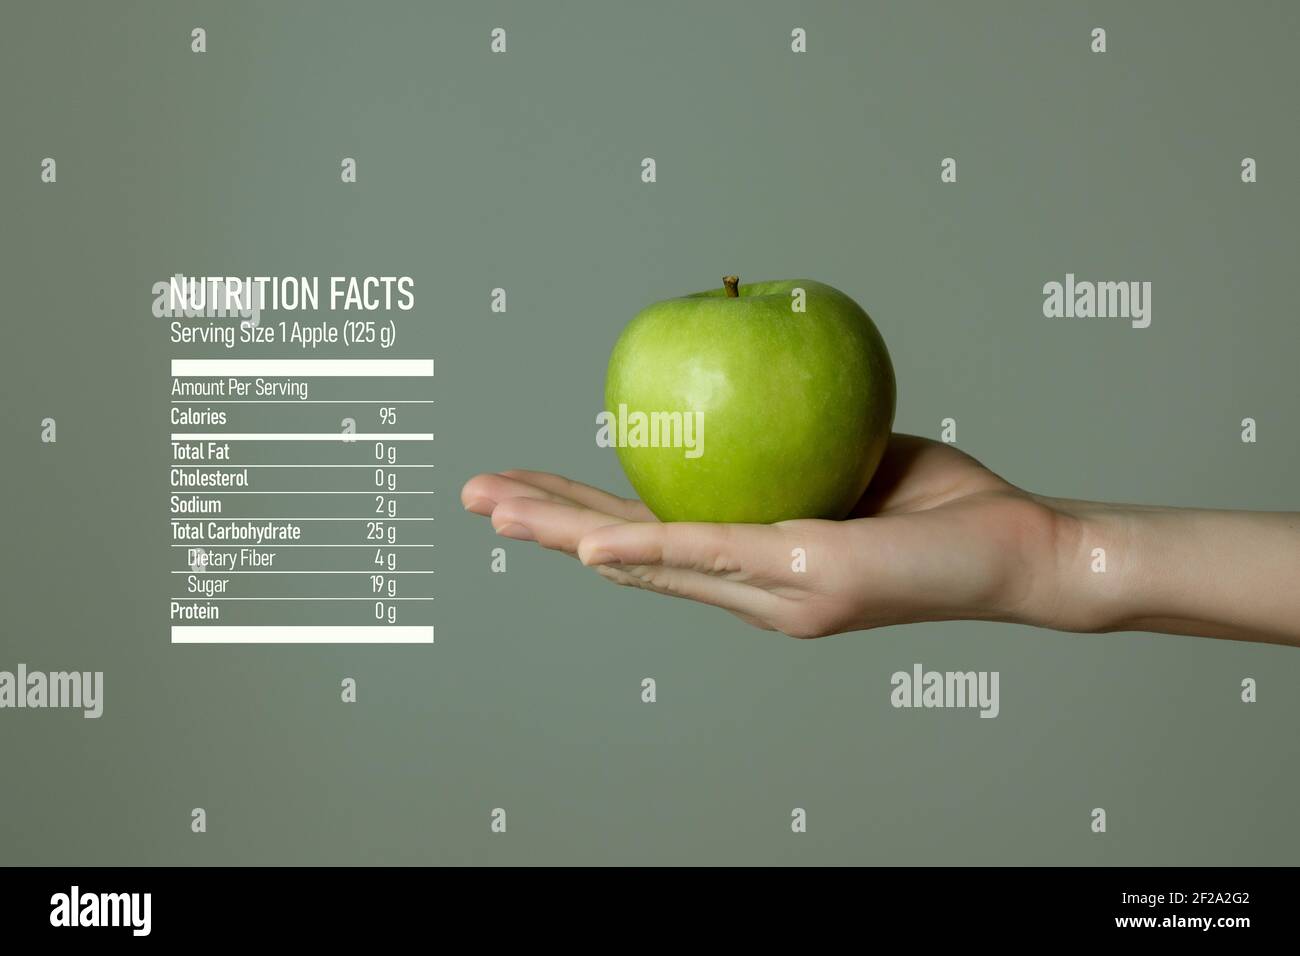 Frau`s Hand hält grünen Apfel, Ernährung Fakten auf grauem Hintergrund. Diätetische Lebensmittel und Vitamine Konzeptvorlage für Produktwerbung. Stockfoto